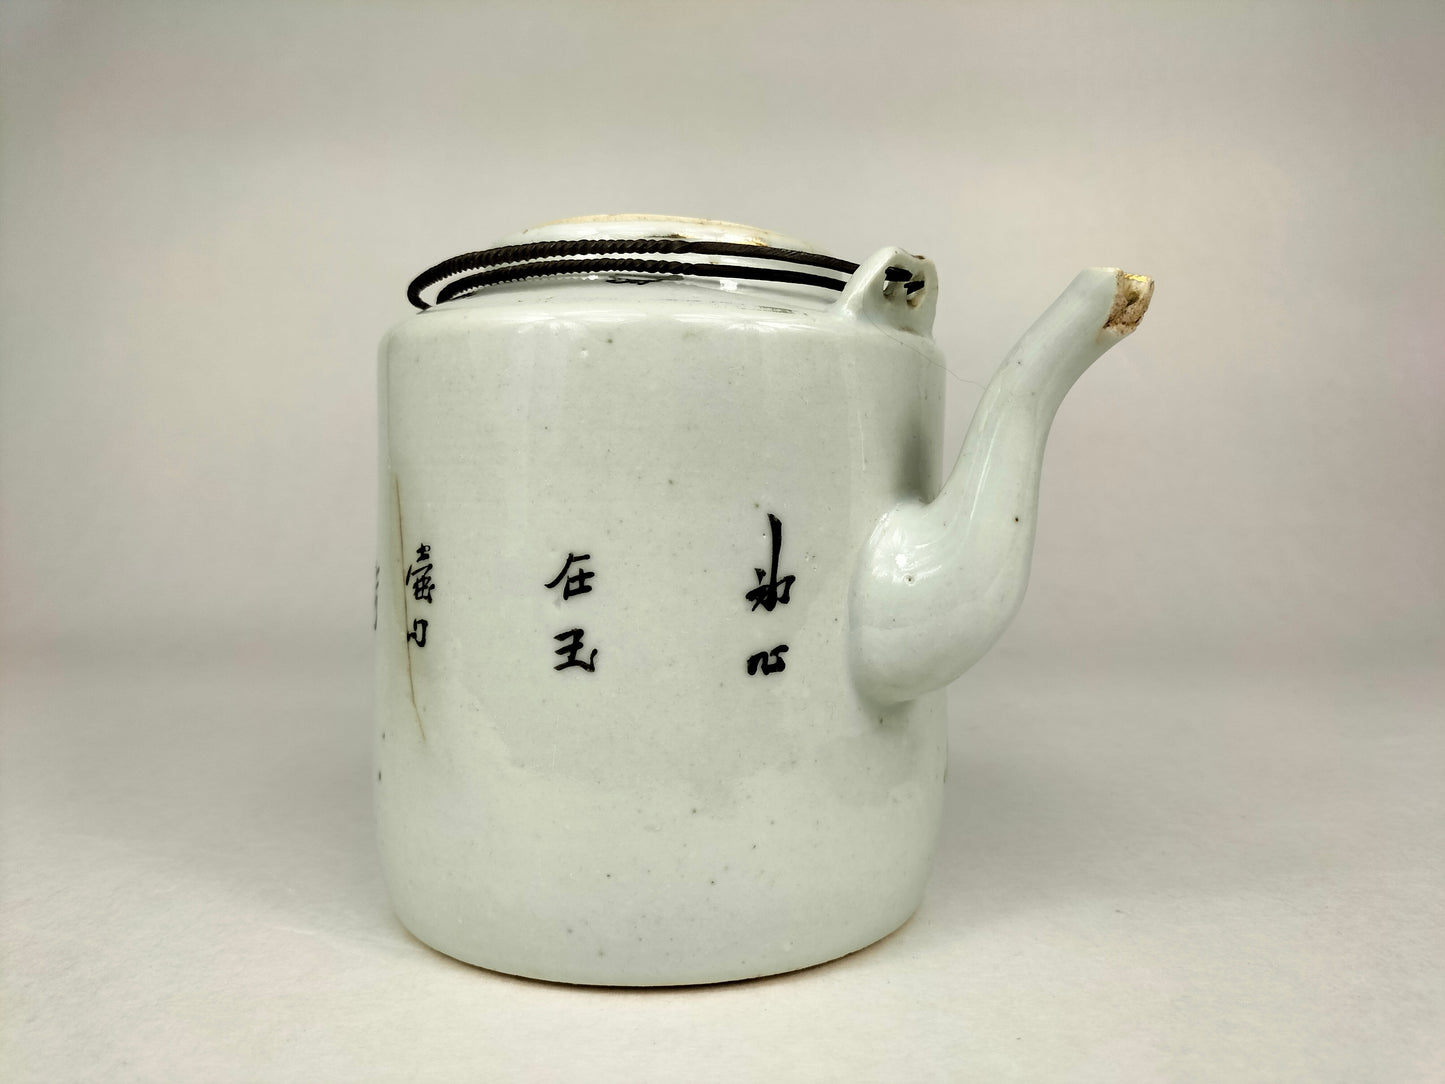 إبريق شاي صيني عتيق مزين بأشكال // فترة الجمهورية (1912-1949)